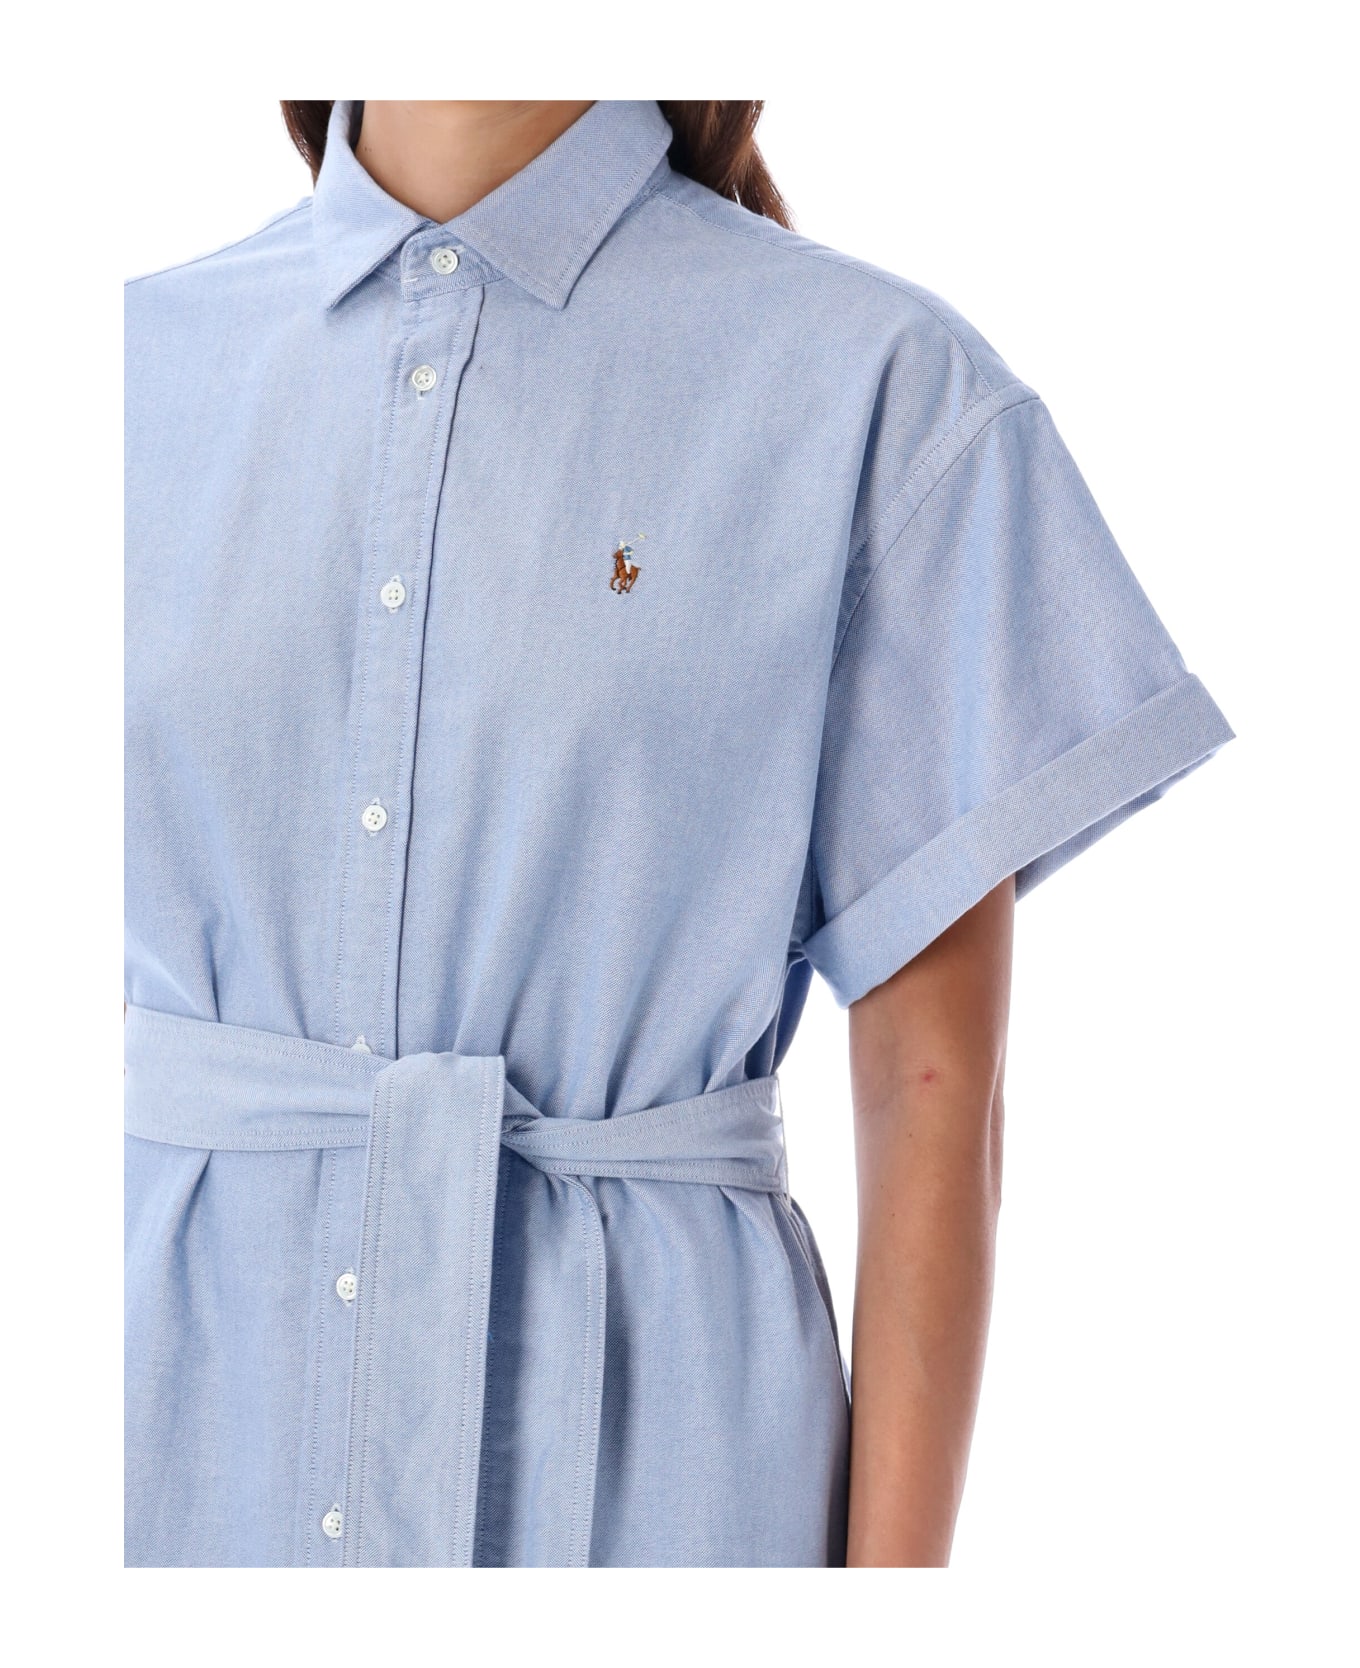 Polo Ralph Lauren Belted Oxford Shirtdress - BSR BLUE LIGHT